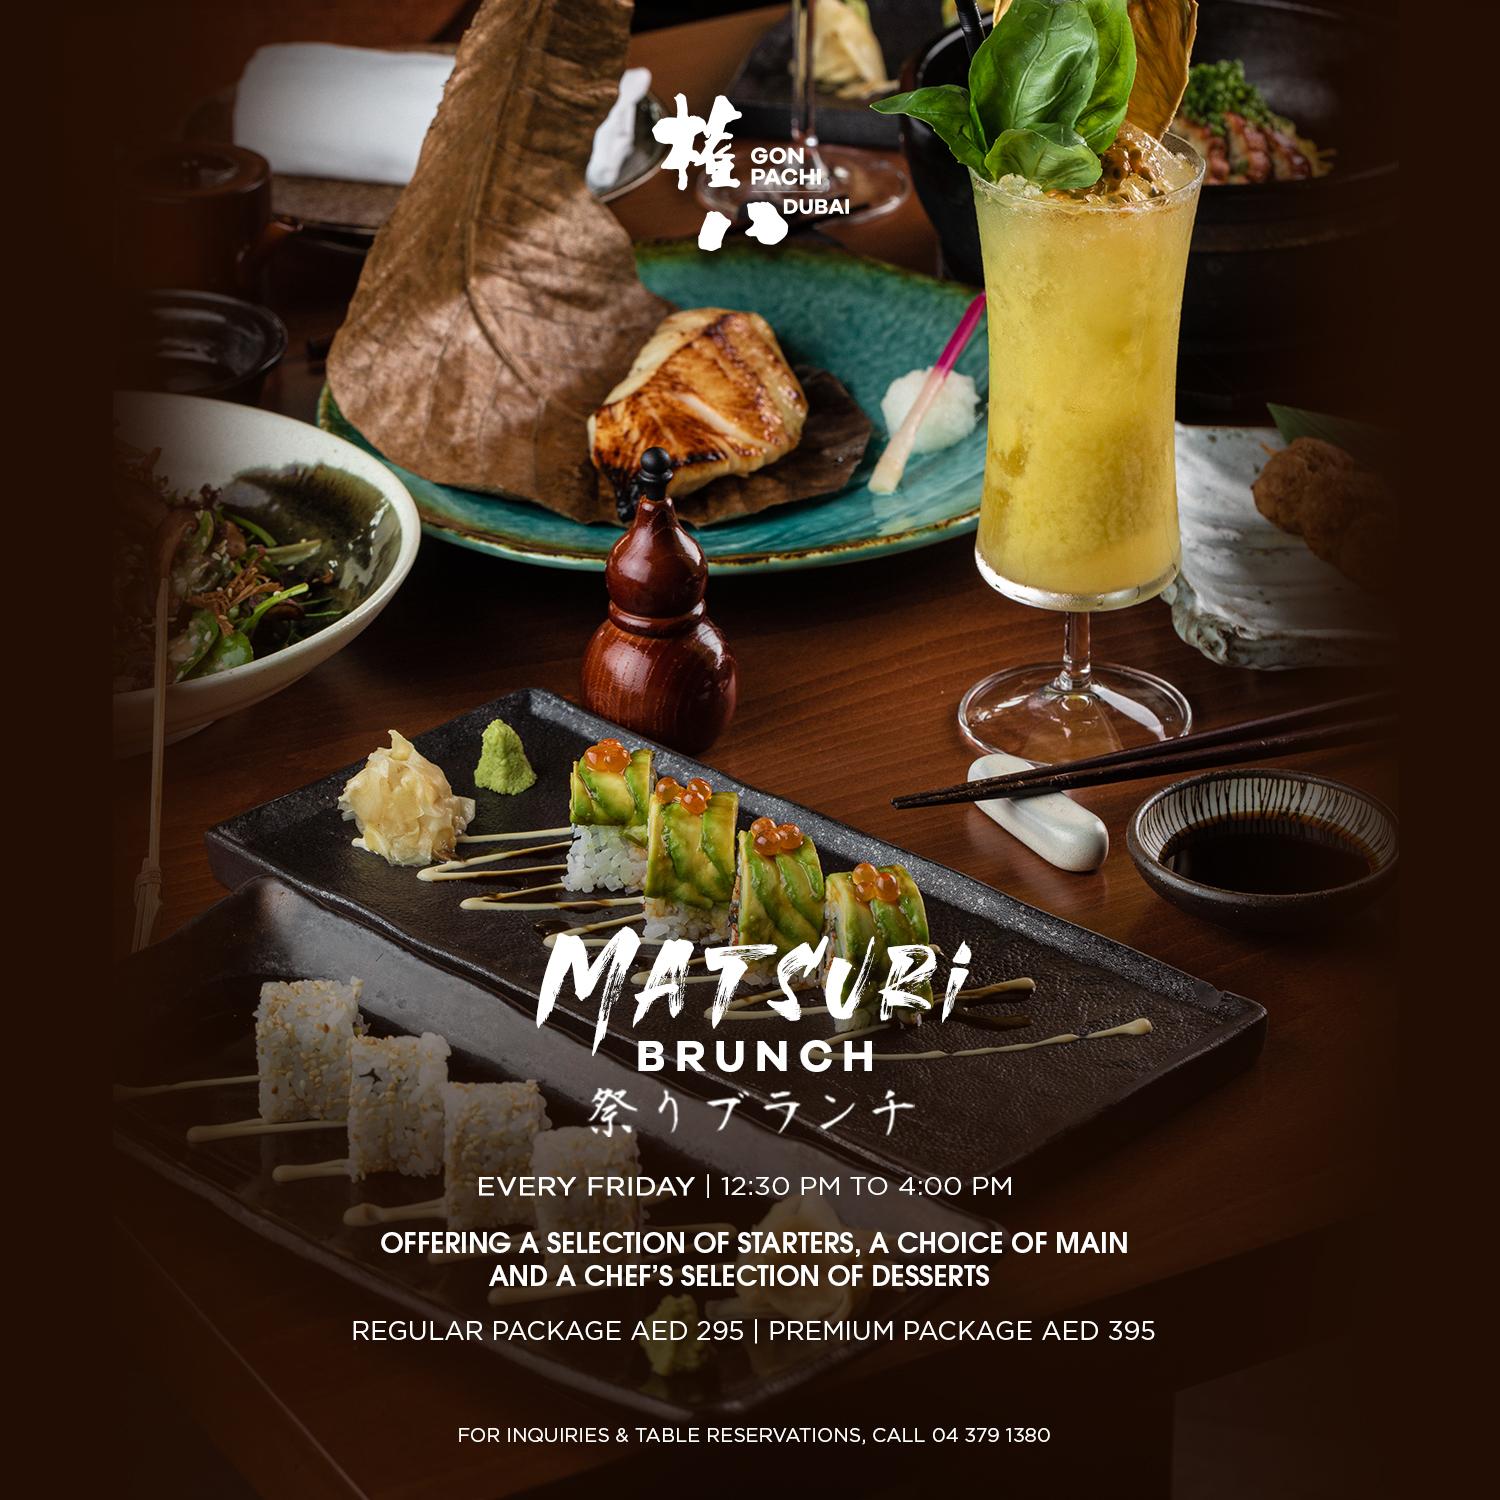 Matsuri brunch